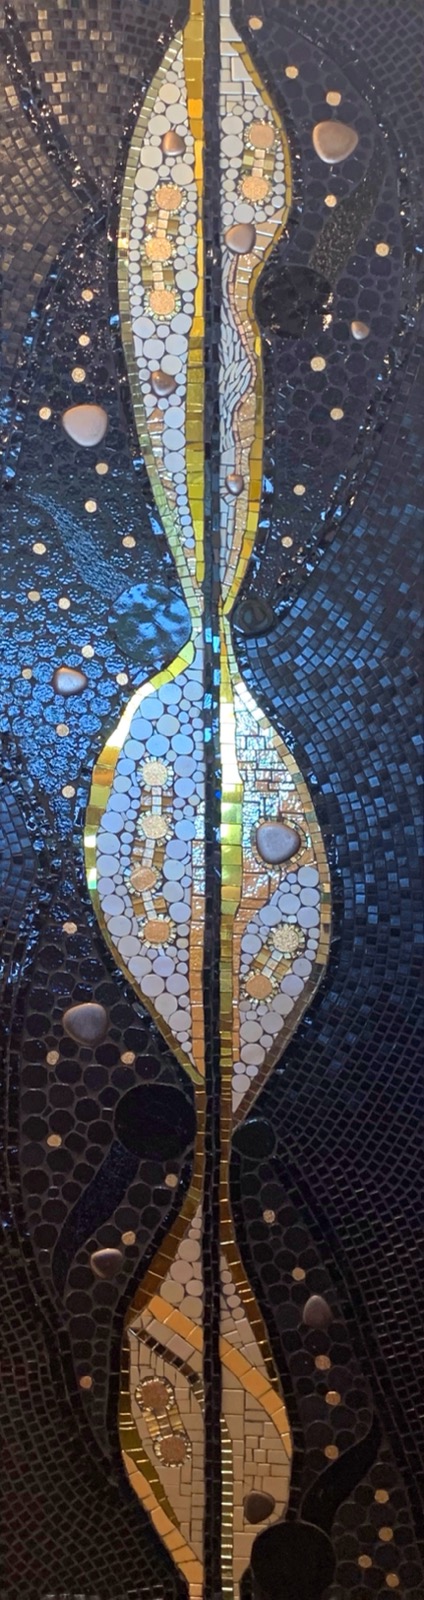 Mozaika artystyczna. Obraz mozaikowy w czerni zdobiony złotem z mozaiki Briare. Autor Pan Krzysztof Gardecki